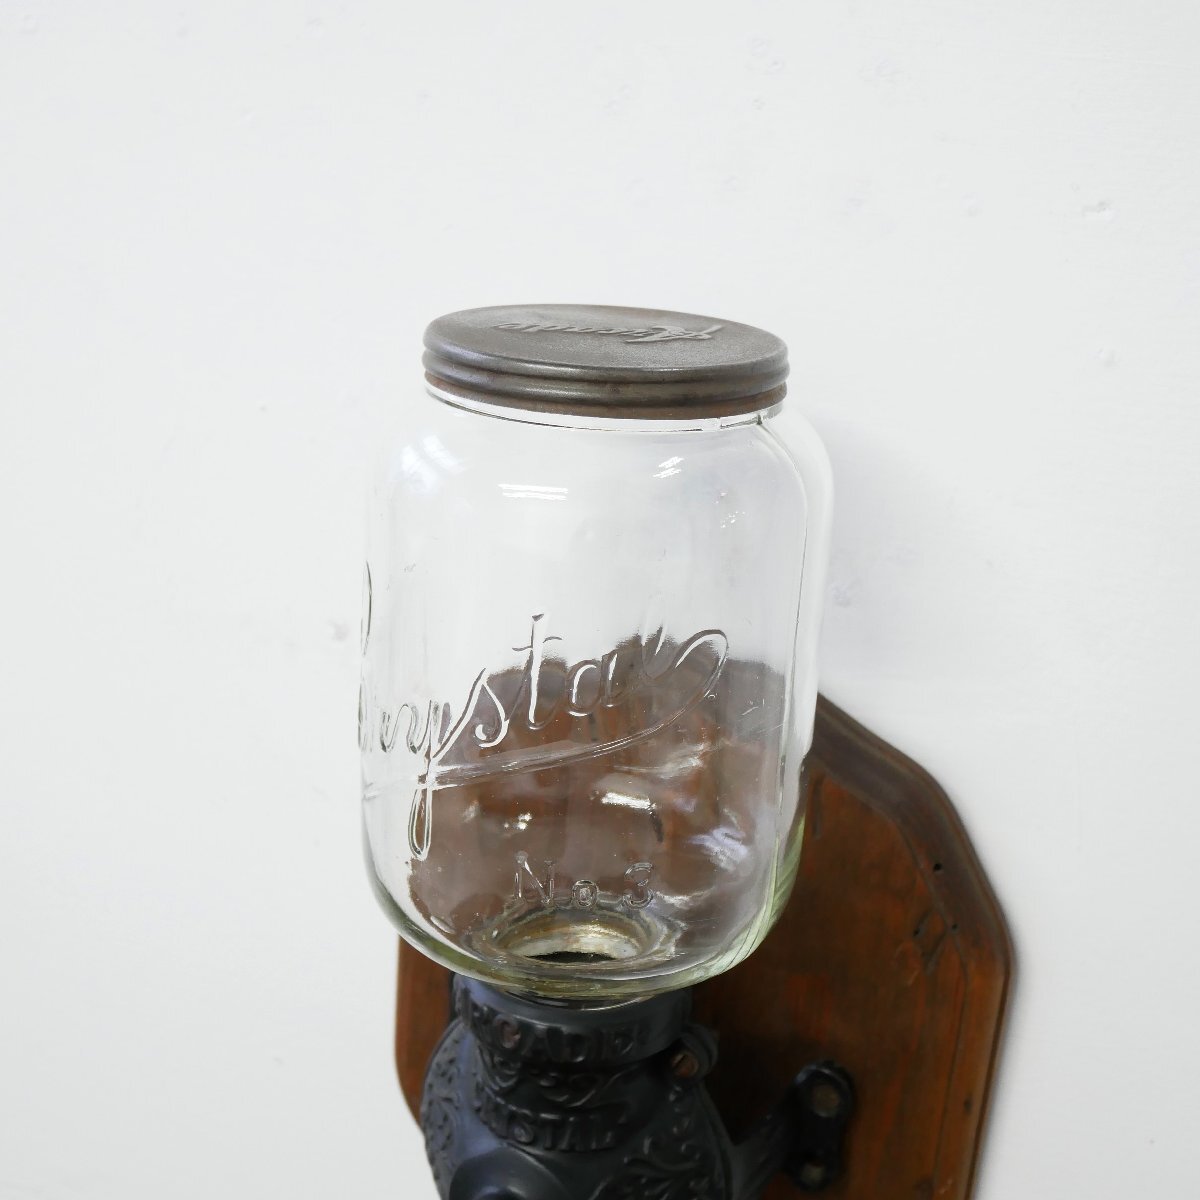 1900's アメリカ アンティーク コーヒーグラインダー Crystal No3 / ミル カフェ ディスプレイ小物 キッチン雑貨 #506-62-811_画像3